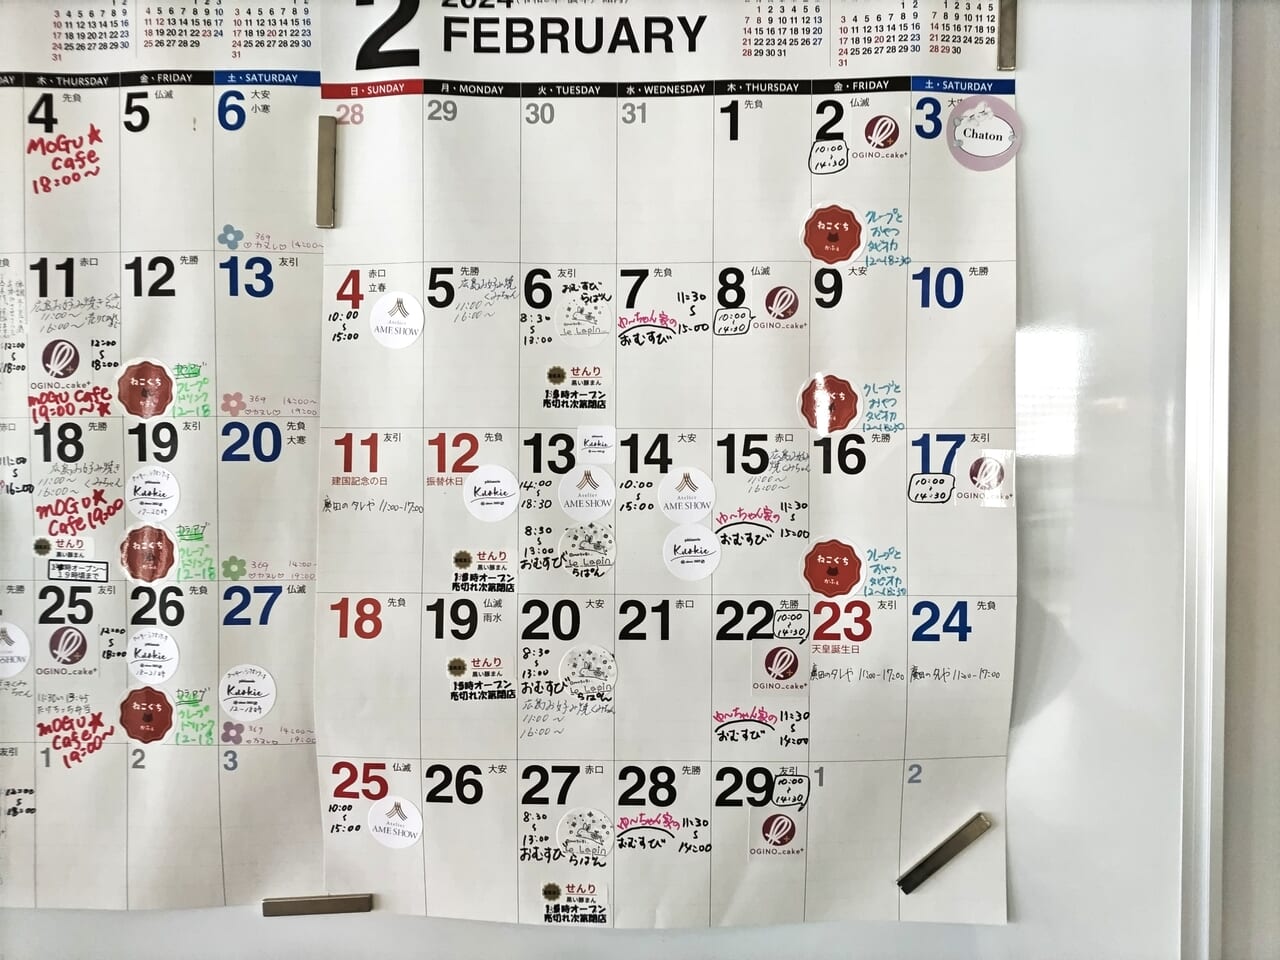 シェアキッチン和泉中央2024年2月カレンダー